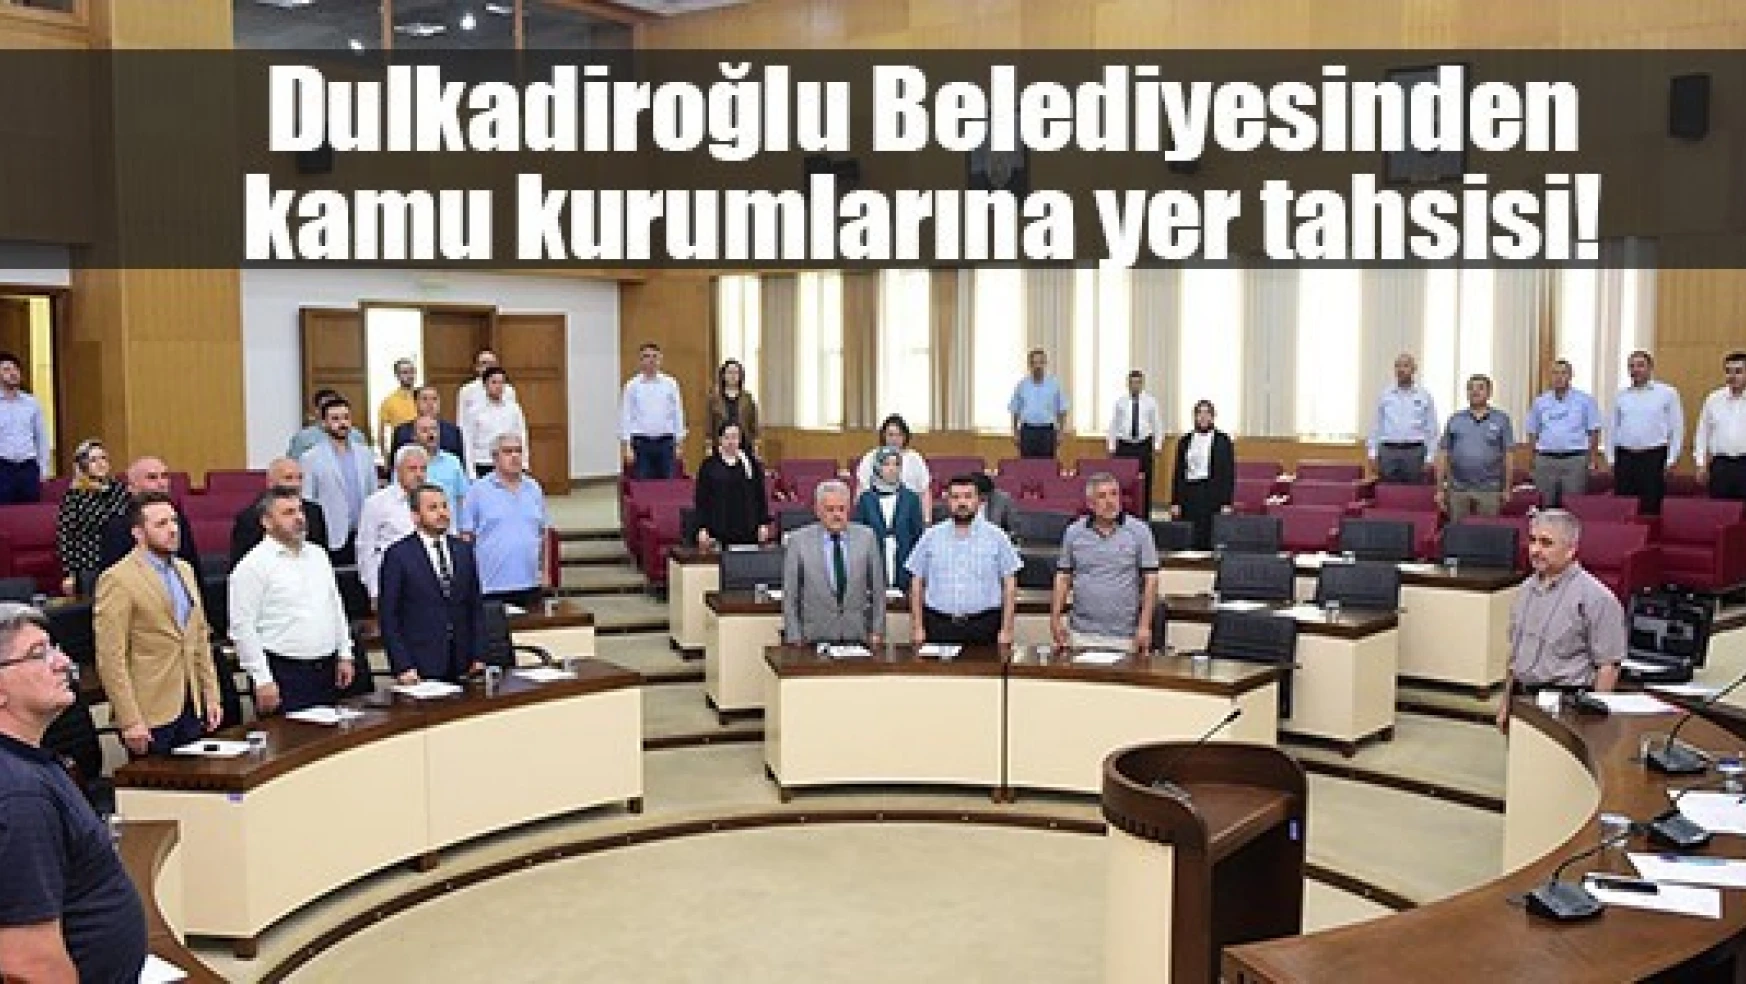 Dulkadiroğlu Belediyesinden kamu kurumlarına yer tahsisi!